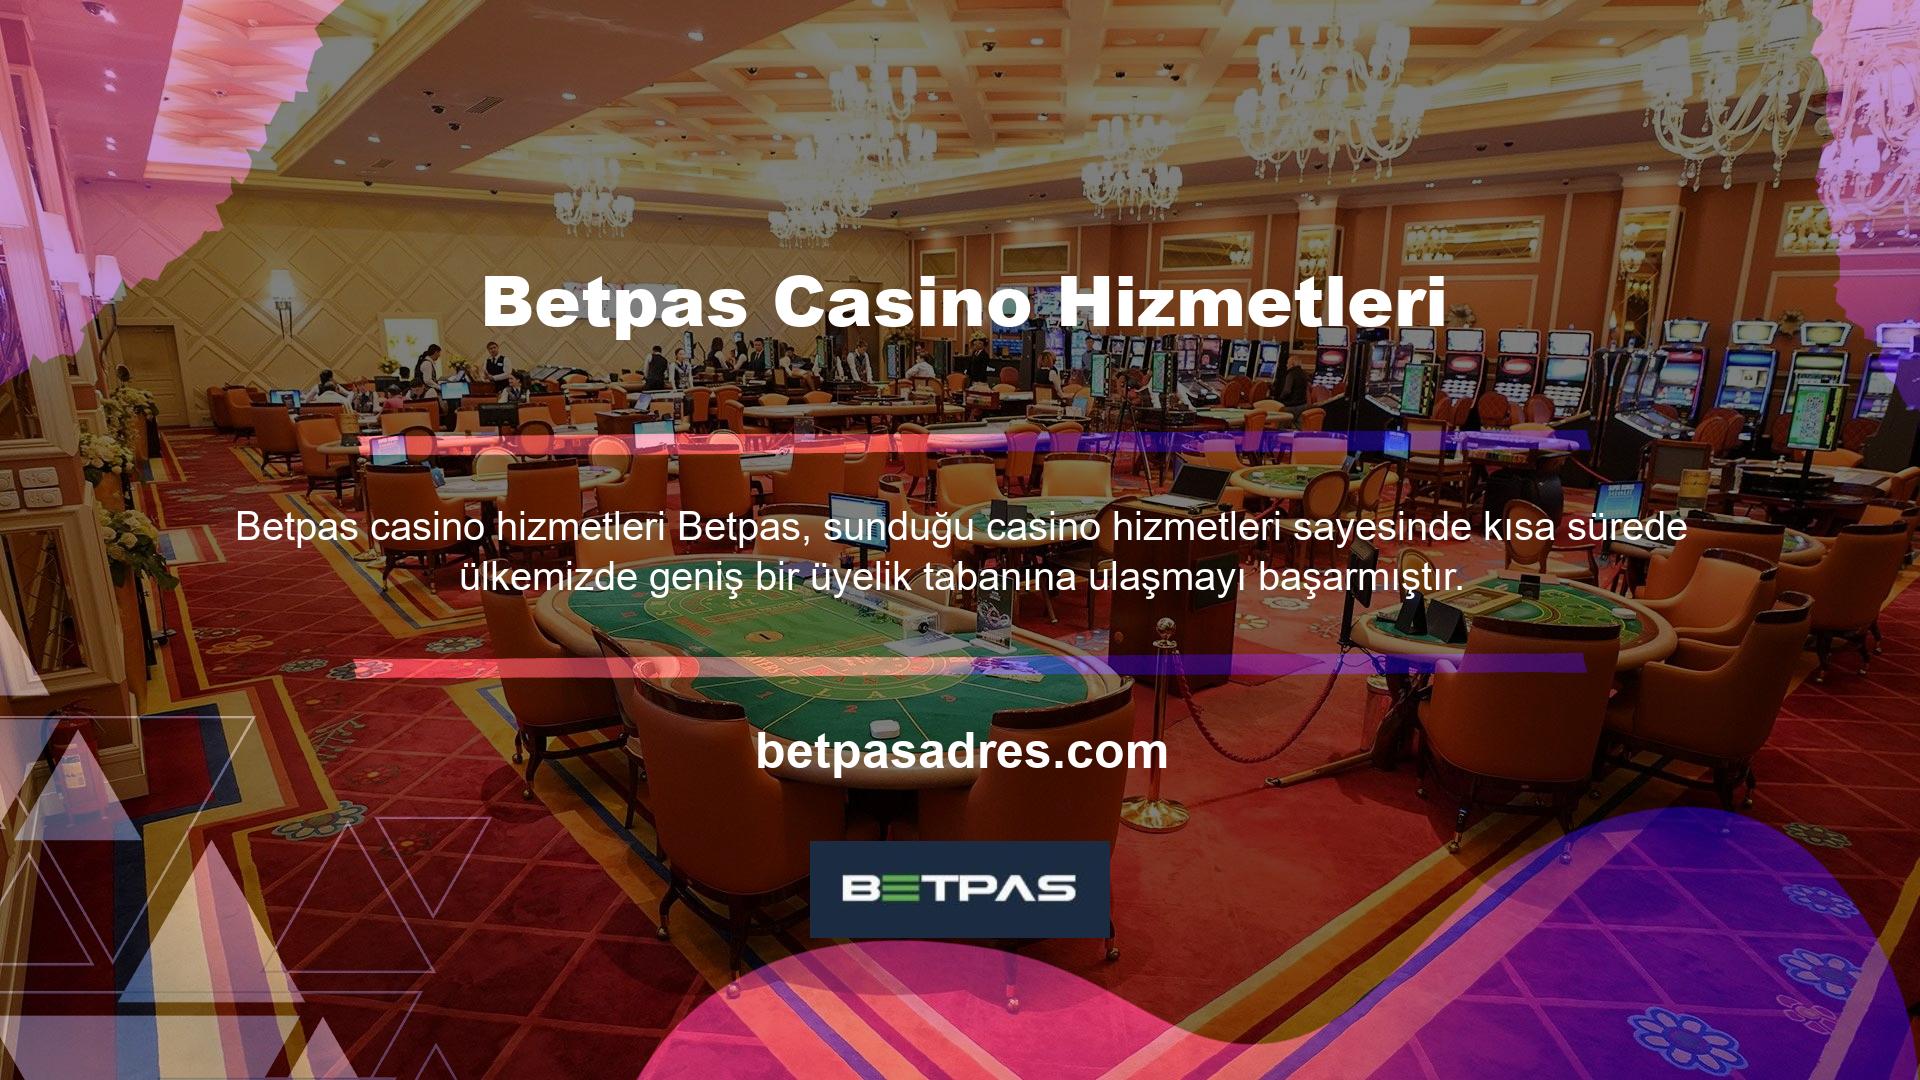 Betpas Casino altyapısı için Canlı Bahis Ofisi çeşitli proje firmaları ile anlaşmalar yapmıştır